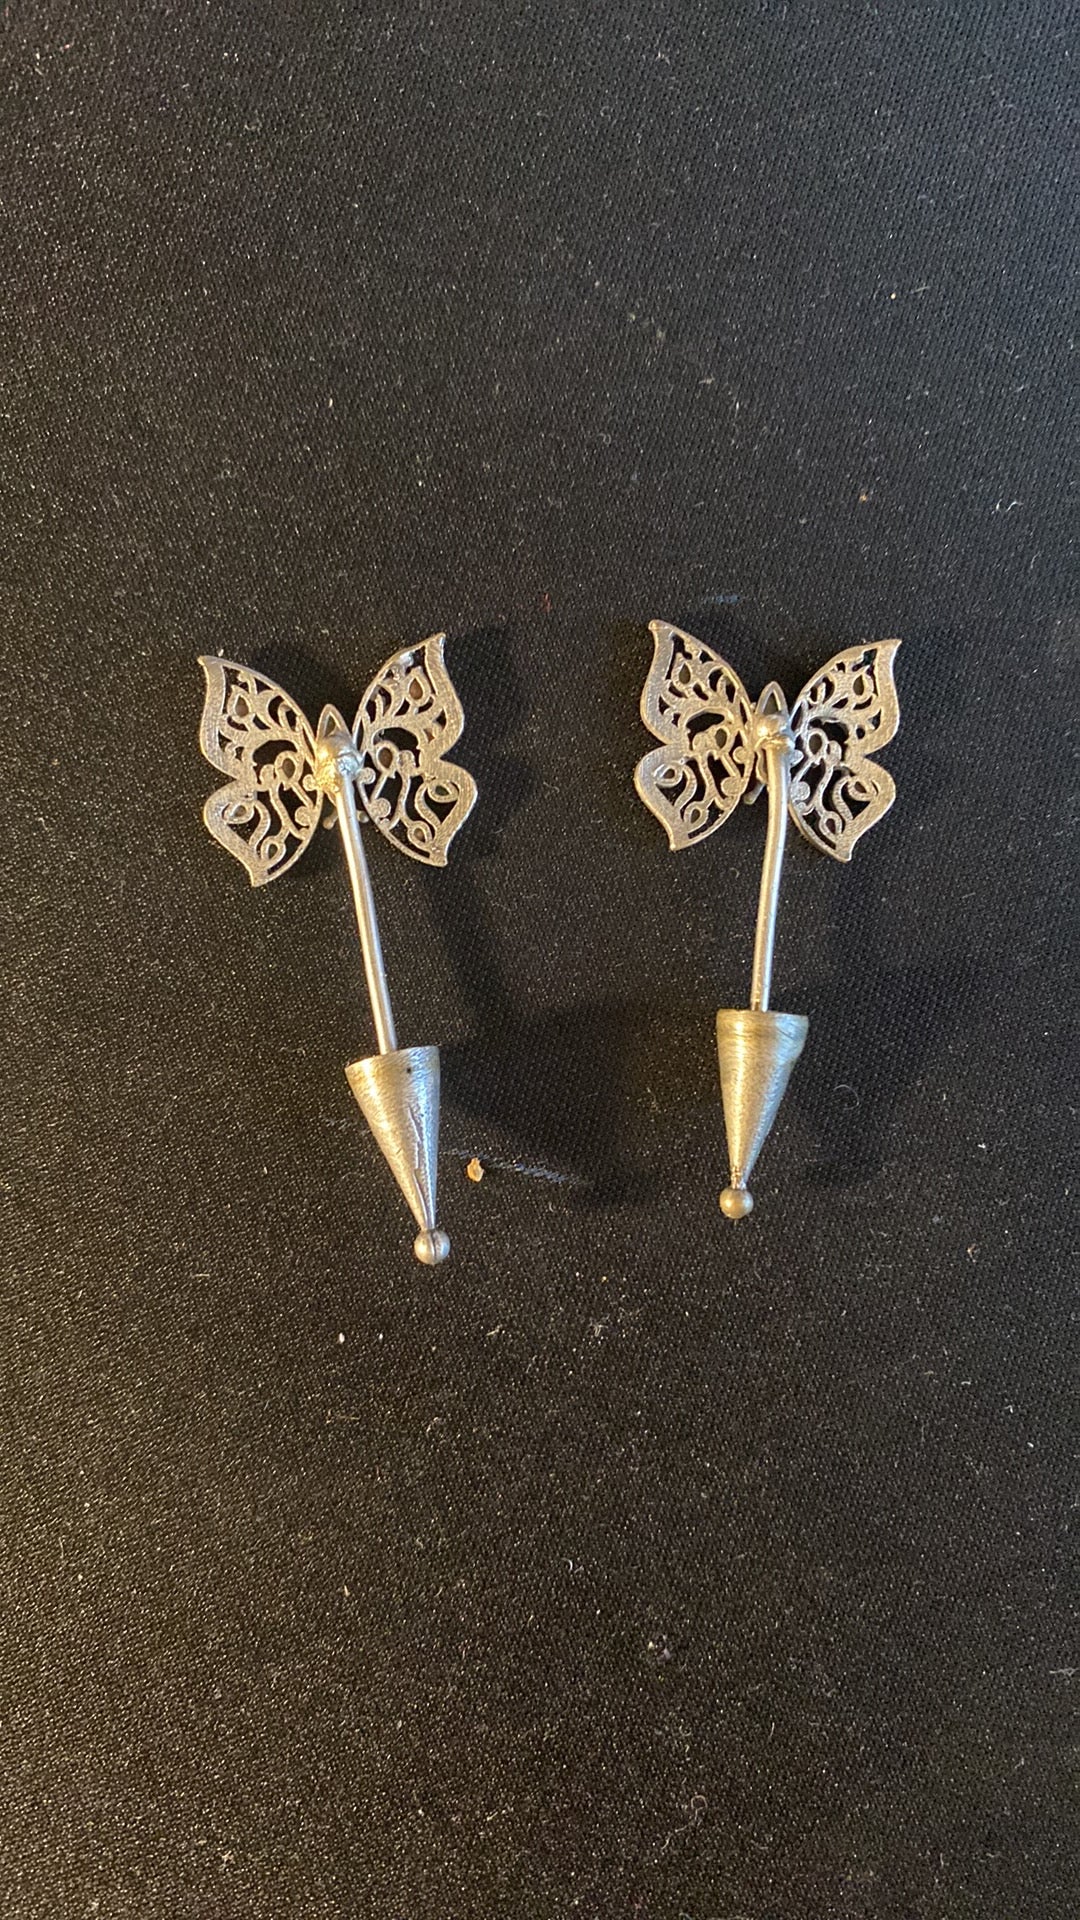 New Jewelry: Silver Butterfly Earrings